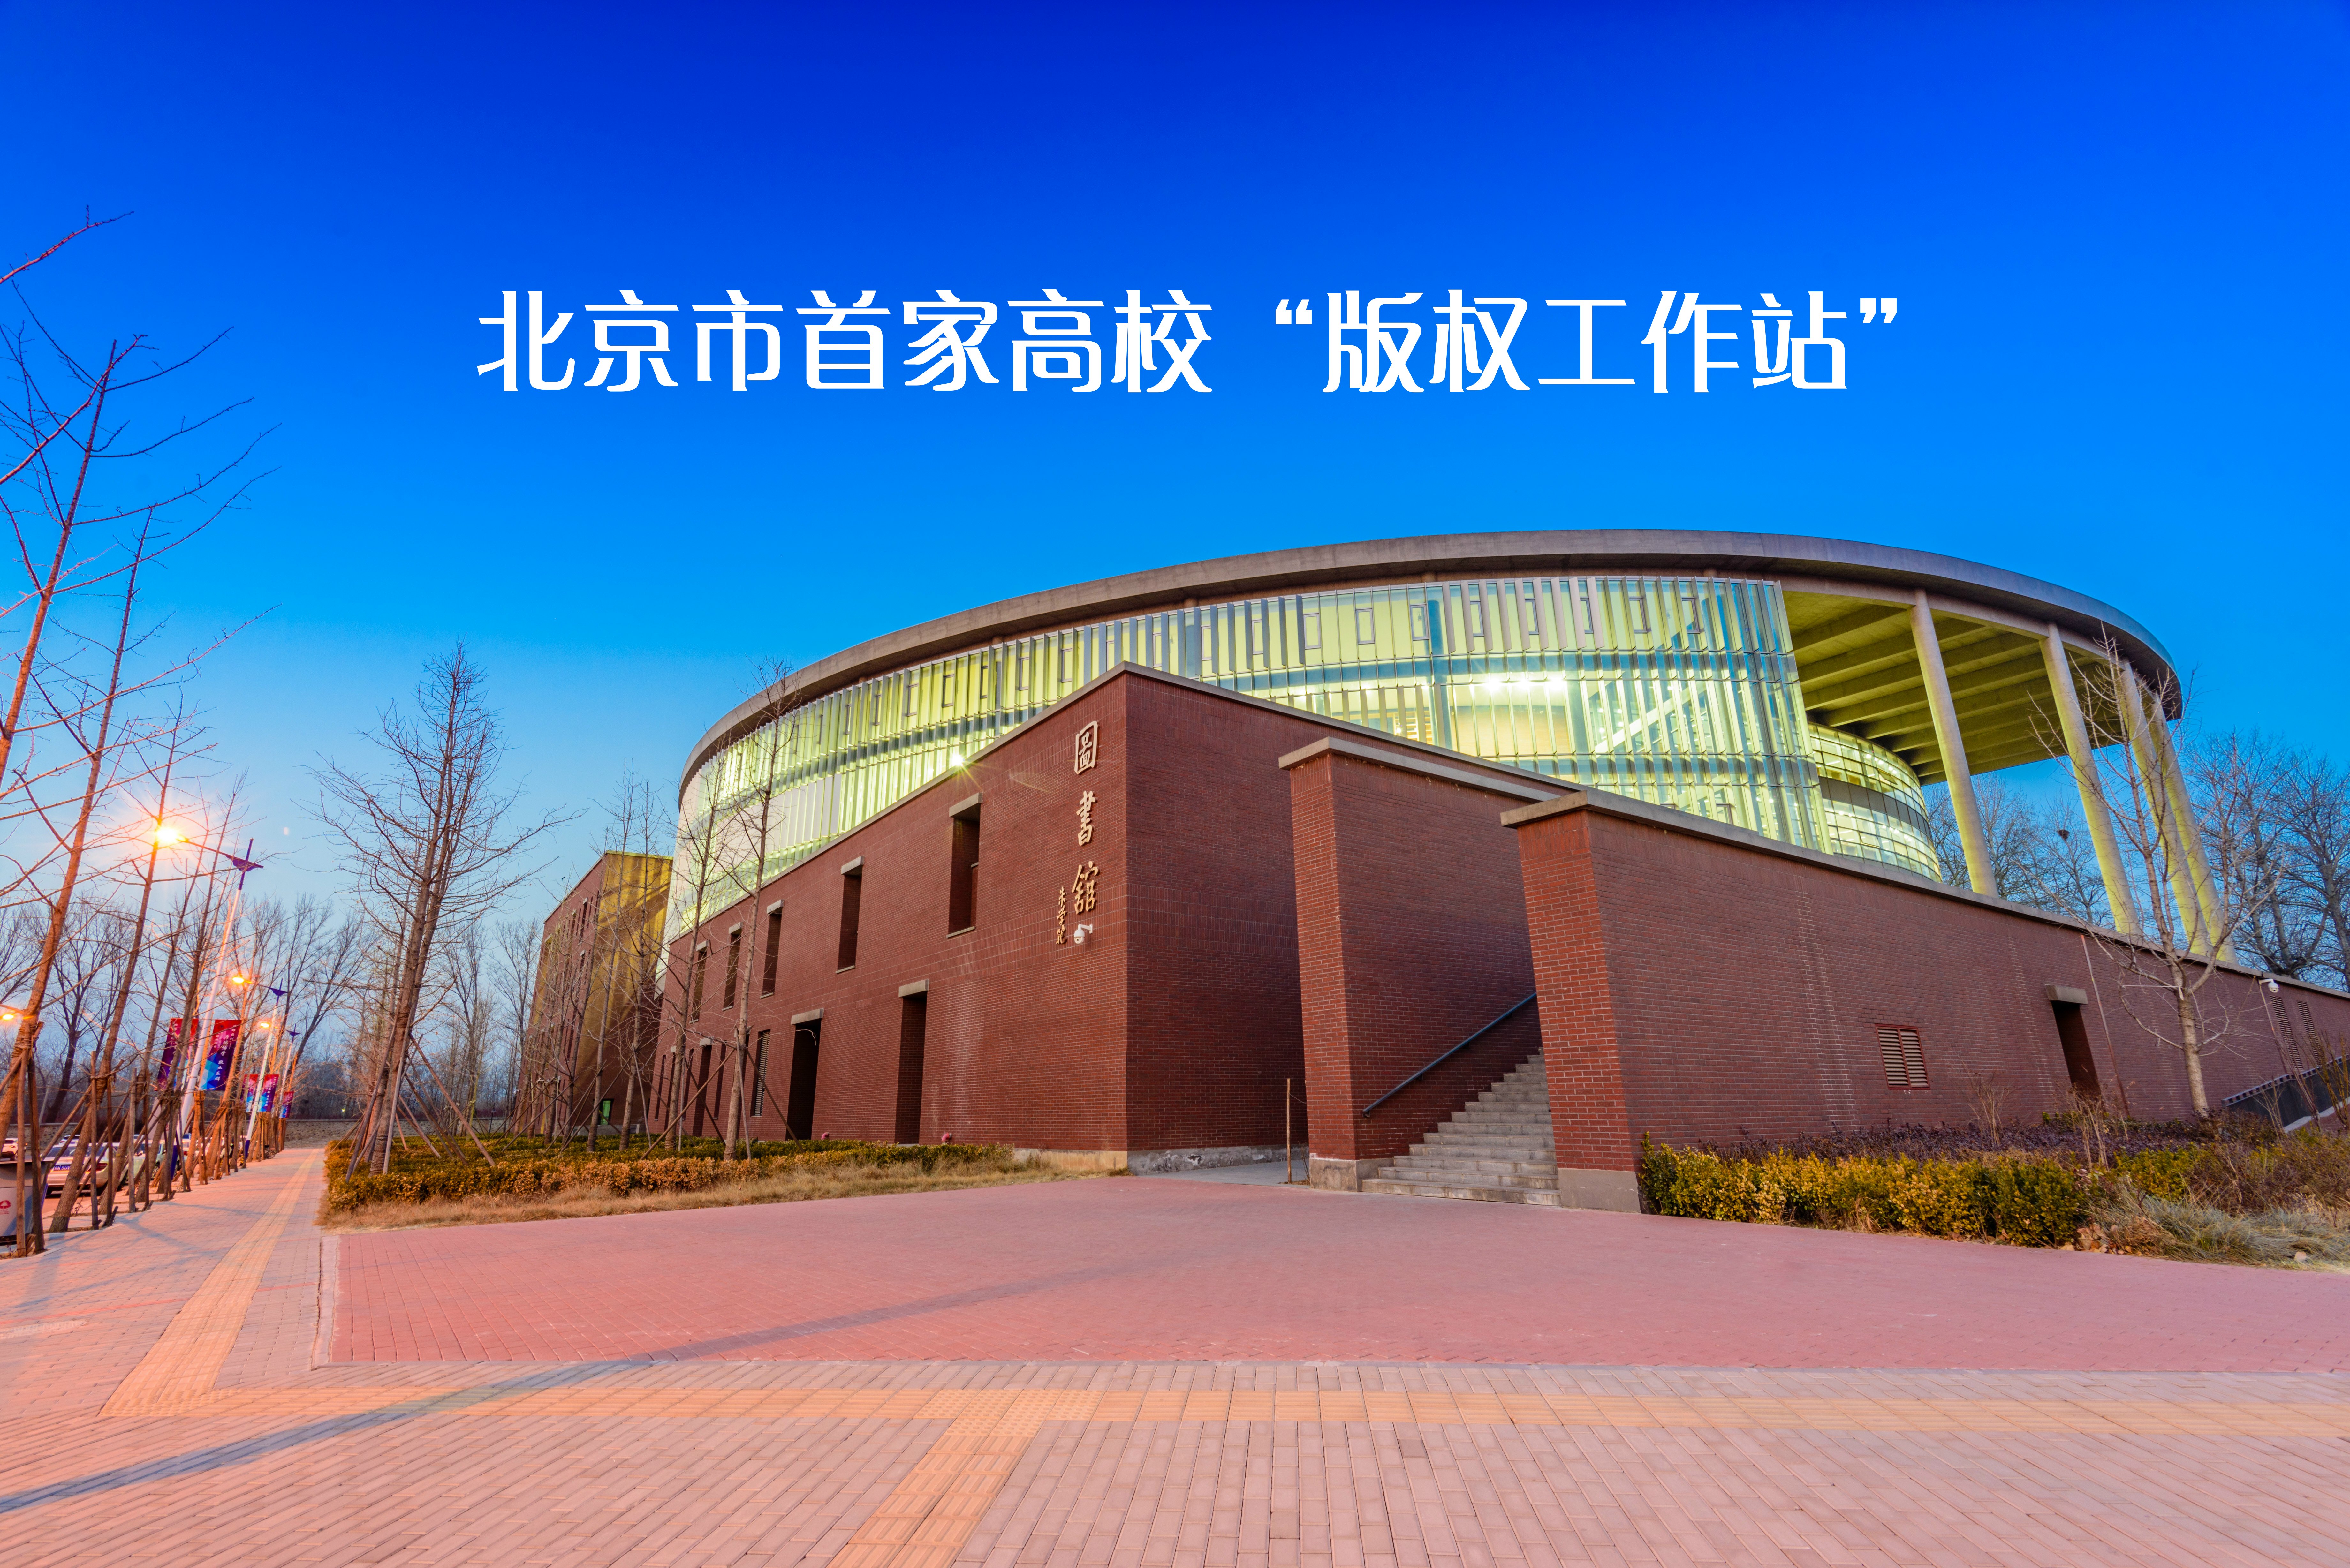 北京市版权局在北京邮电大学建立第一家高校“版权工作站”